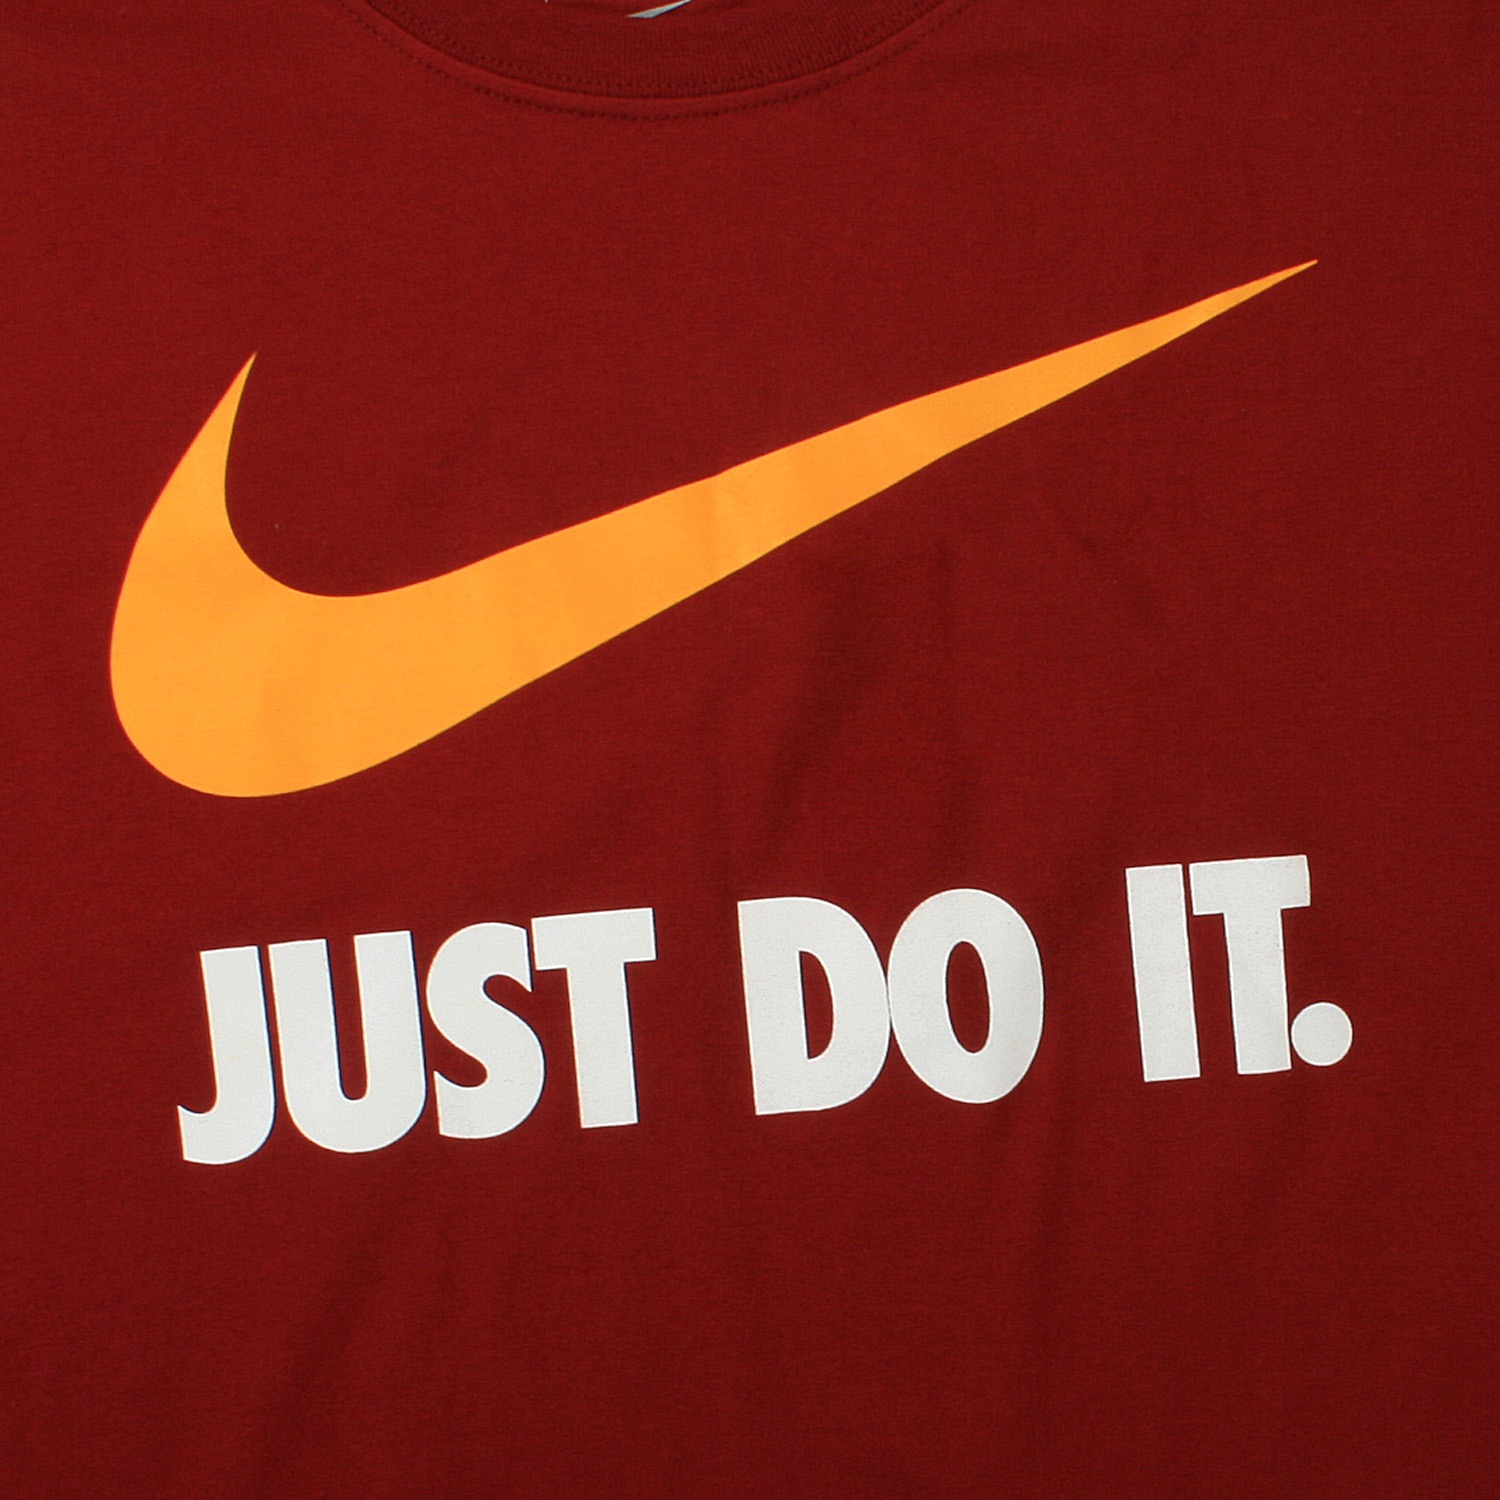 Найк перевод. Слоган найк. Nike лозунг. Nike слоган компании. Слоган Nike just do it.